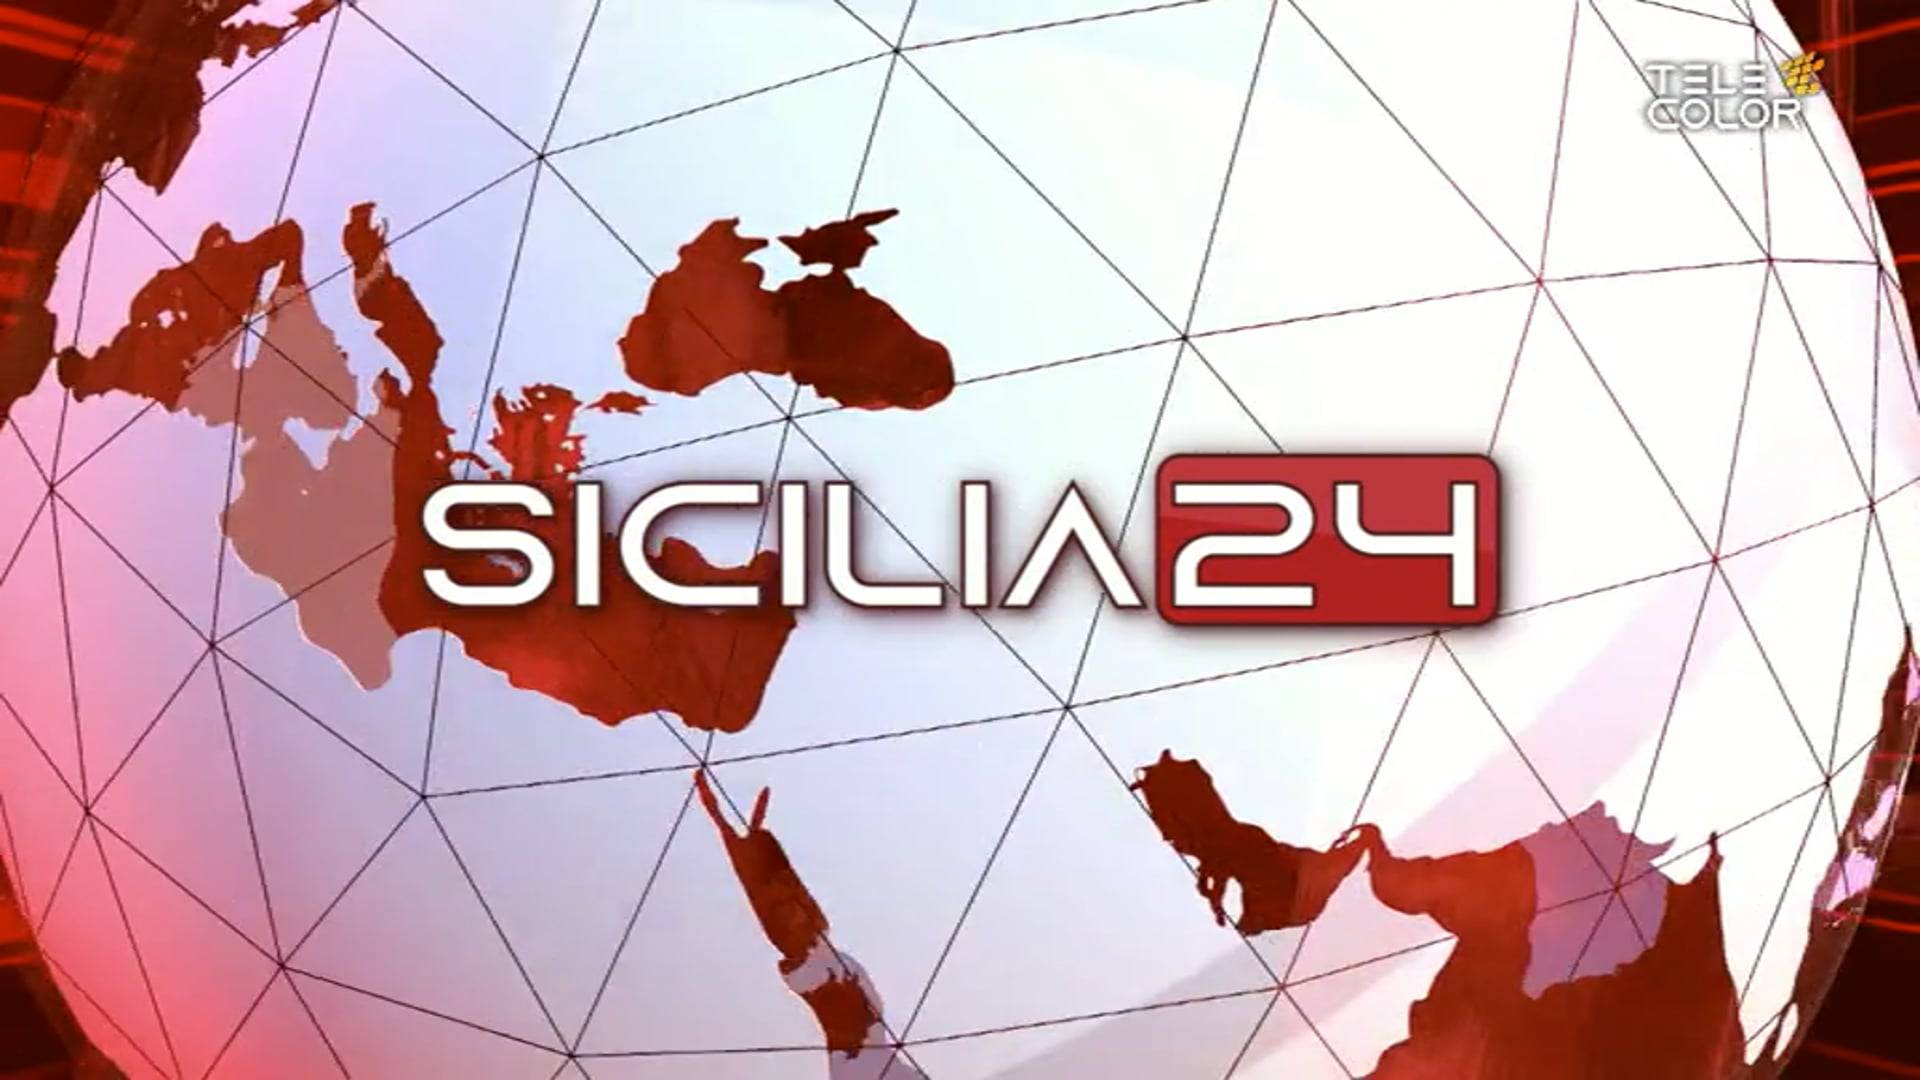 sicilia24-27-aprile-2022-ore-19-vimeo-thumbnail.jpg